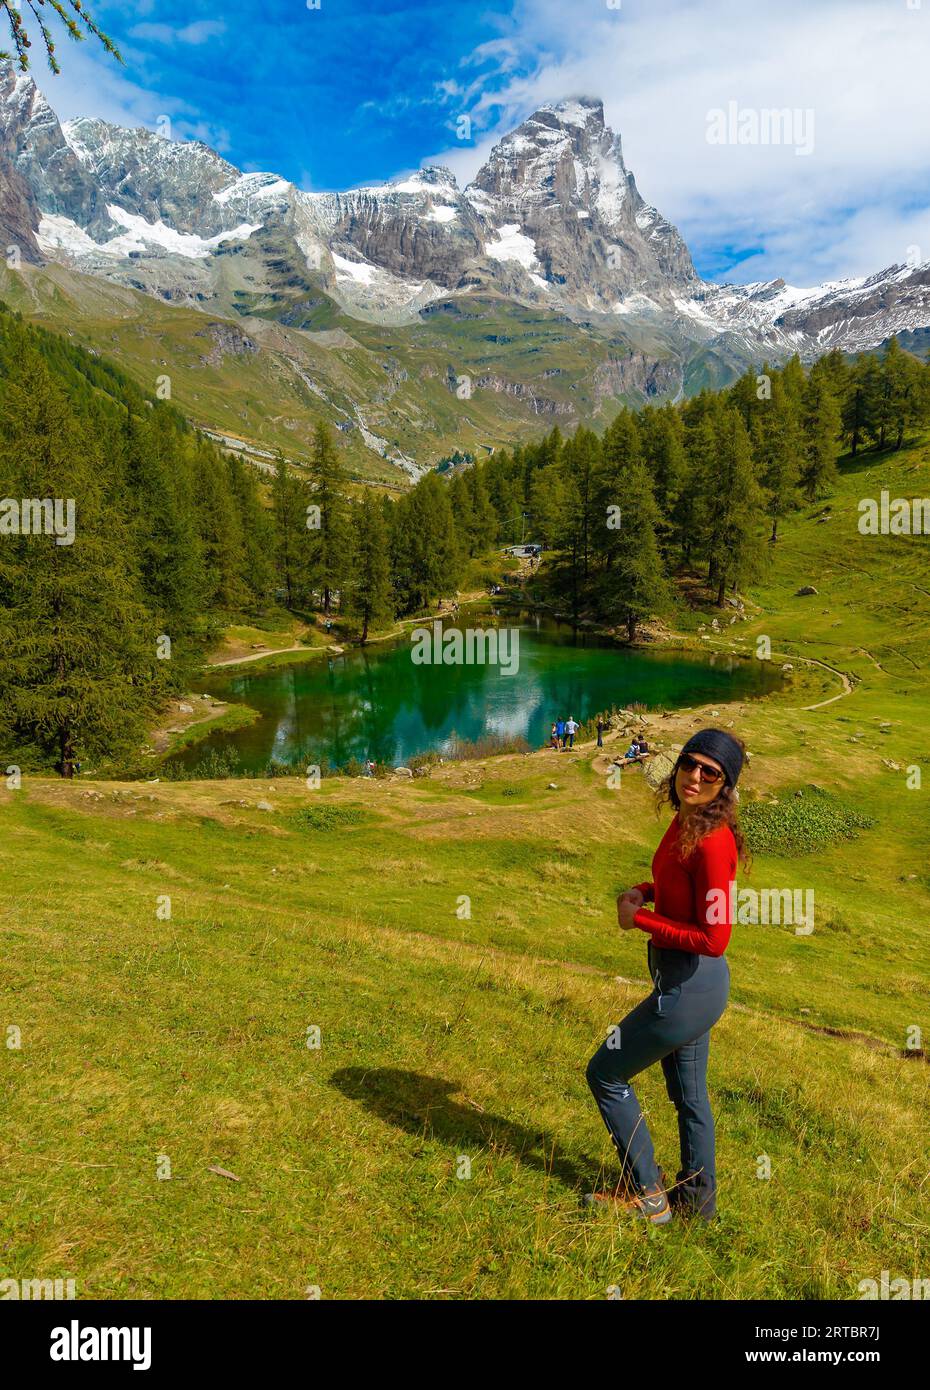 Breuil-Cervinia (Italia) - Una vista sulla città montana di Cervinia con la cima delle Alpi Cervino, i sentieri escursionistici e il lago turistico Lago Blu, Valle d'Aosta Foto Stock